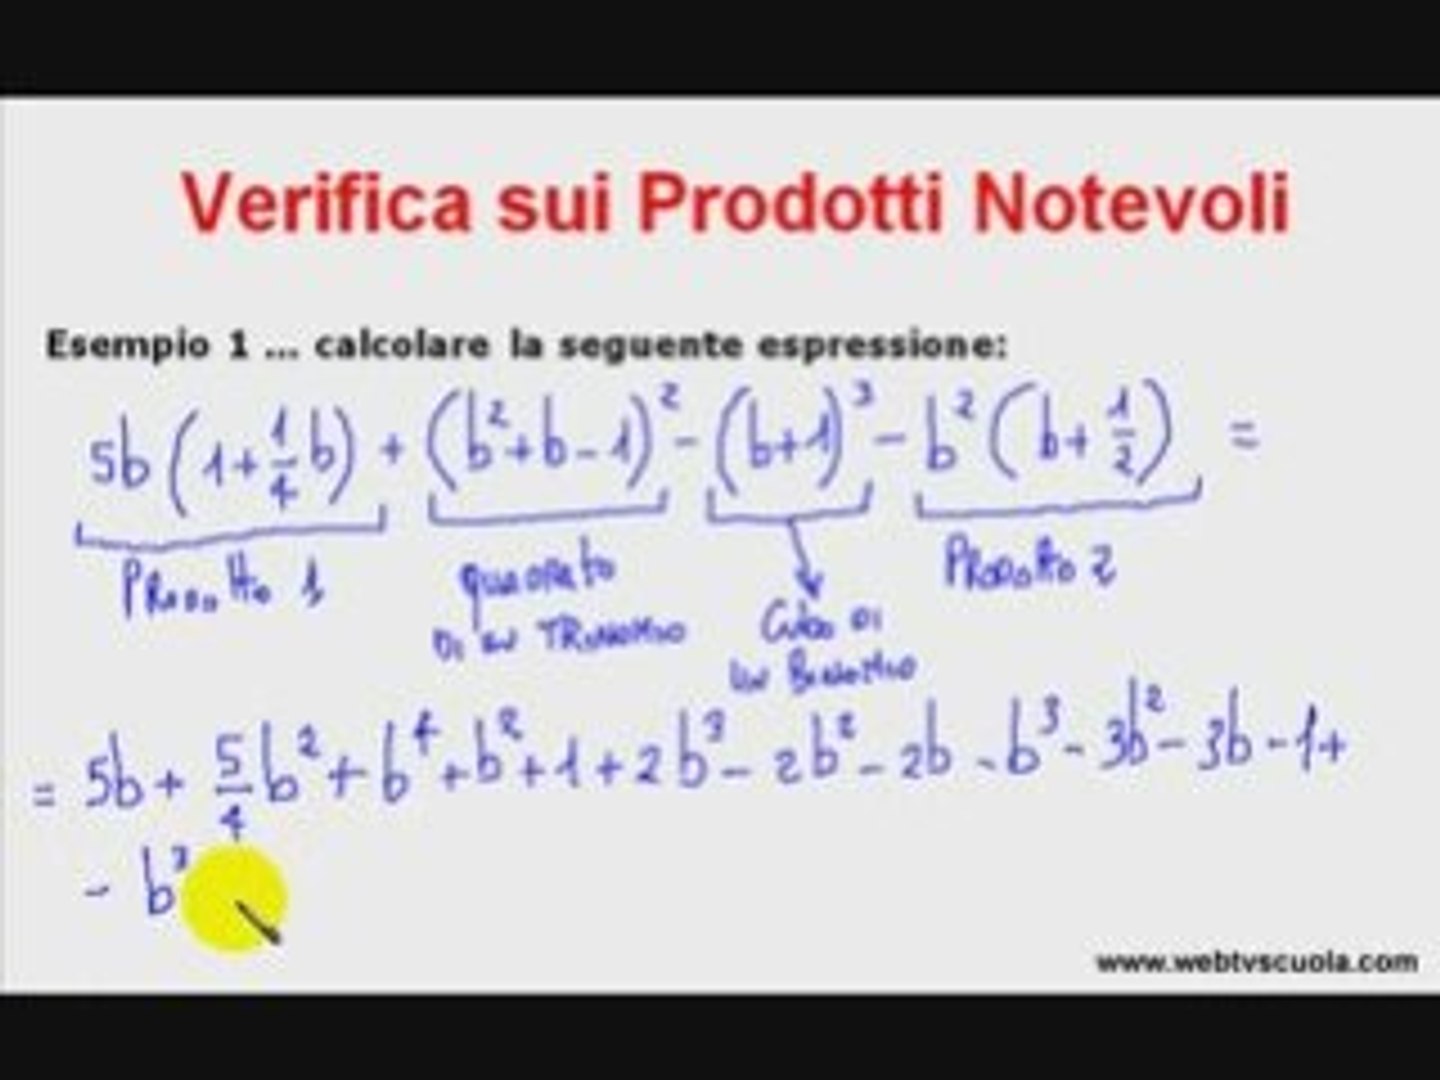 Matematica: Esercizi di Verfica sui Prodotti Notevoli - Video Dailymotion